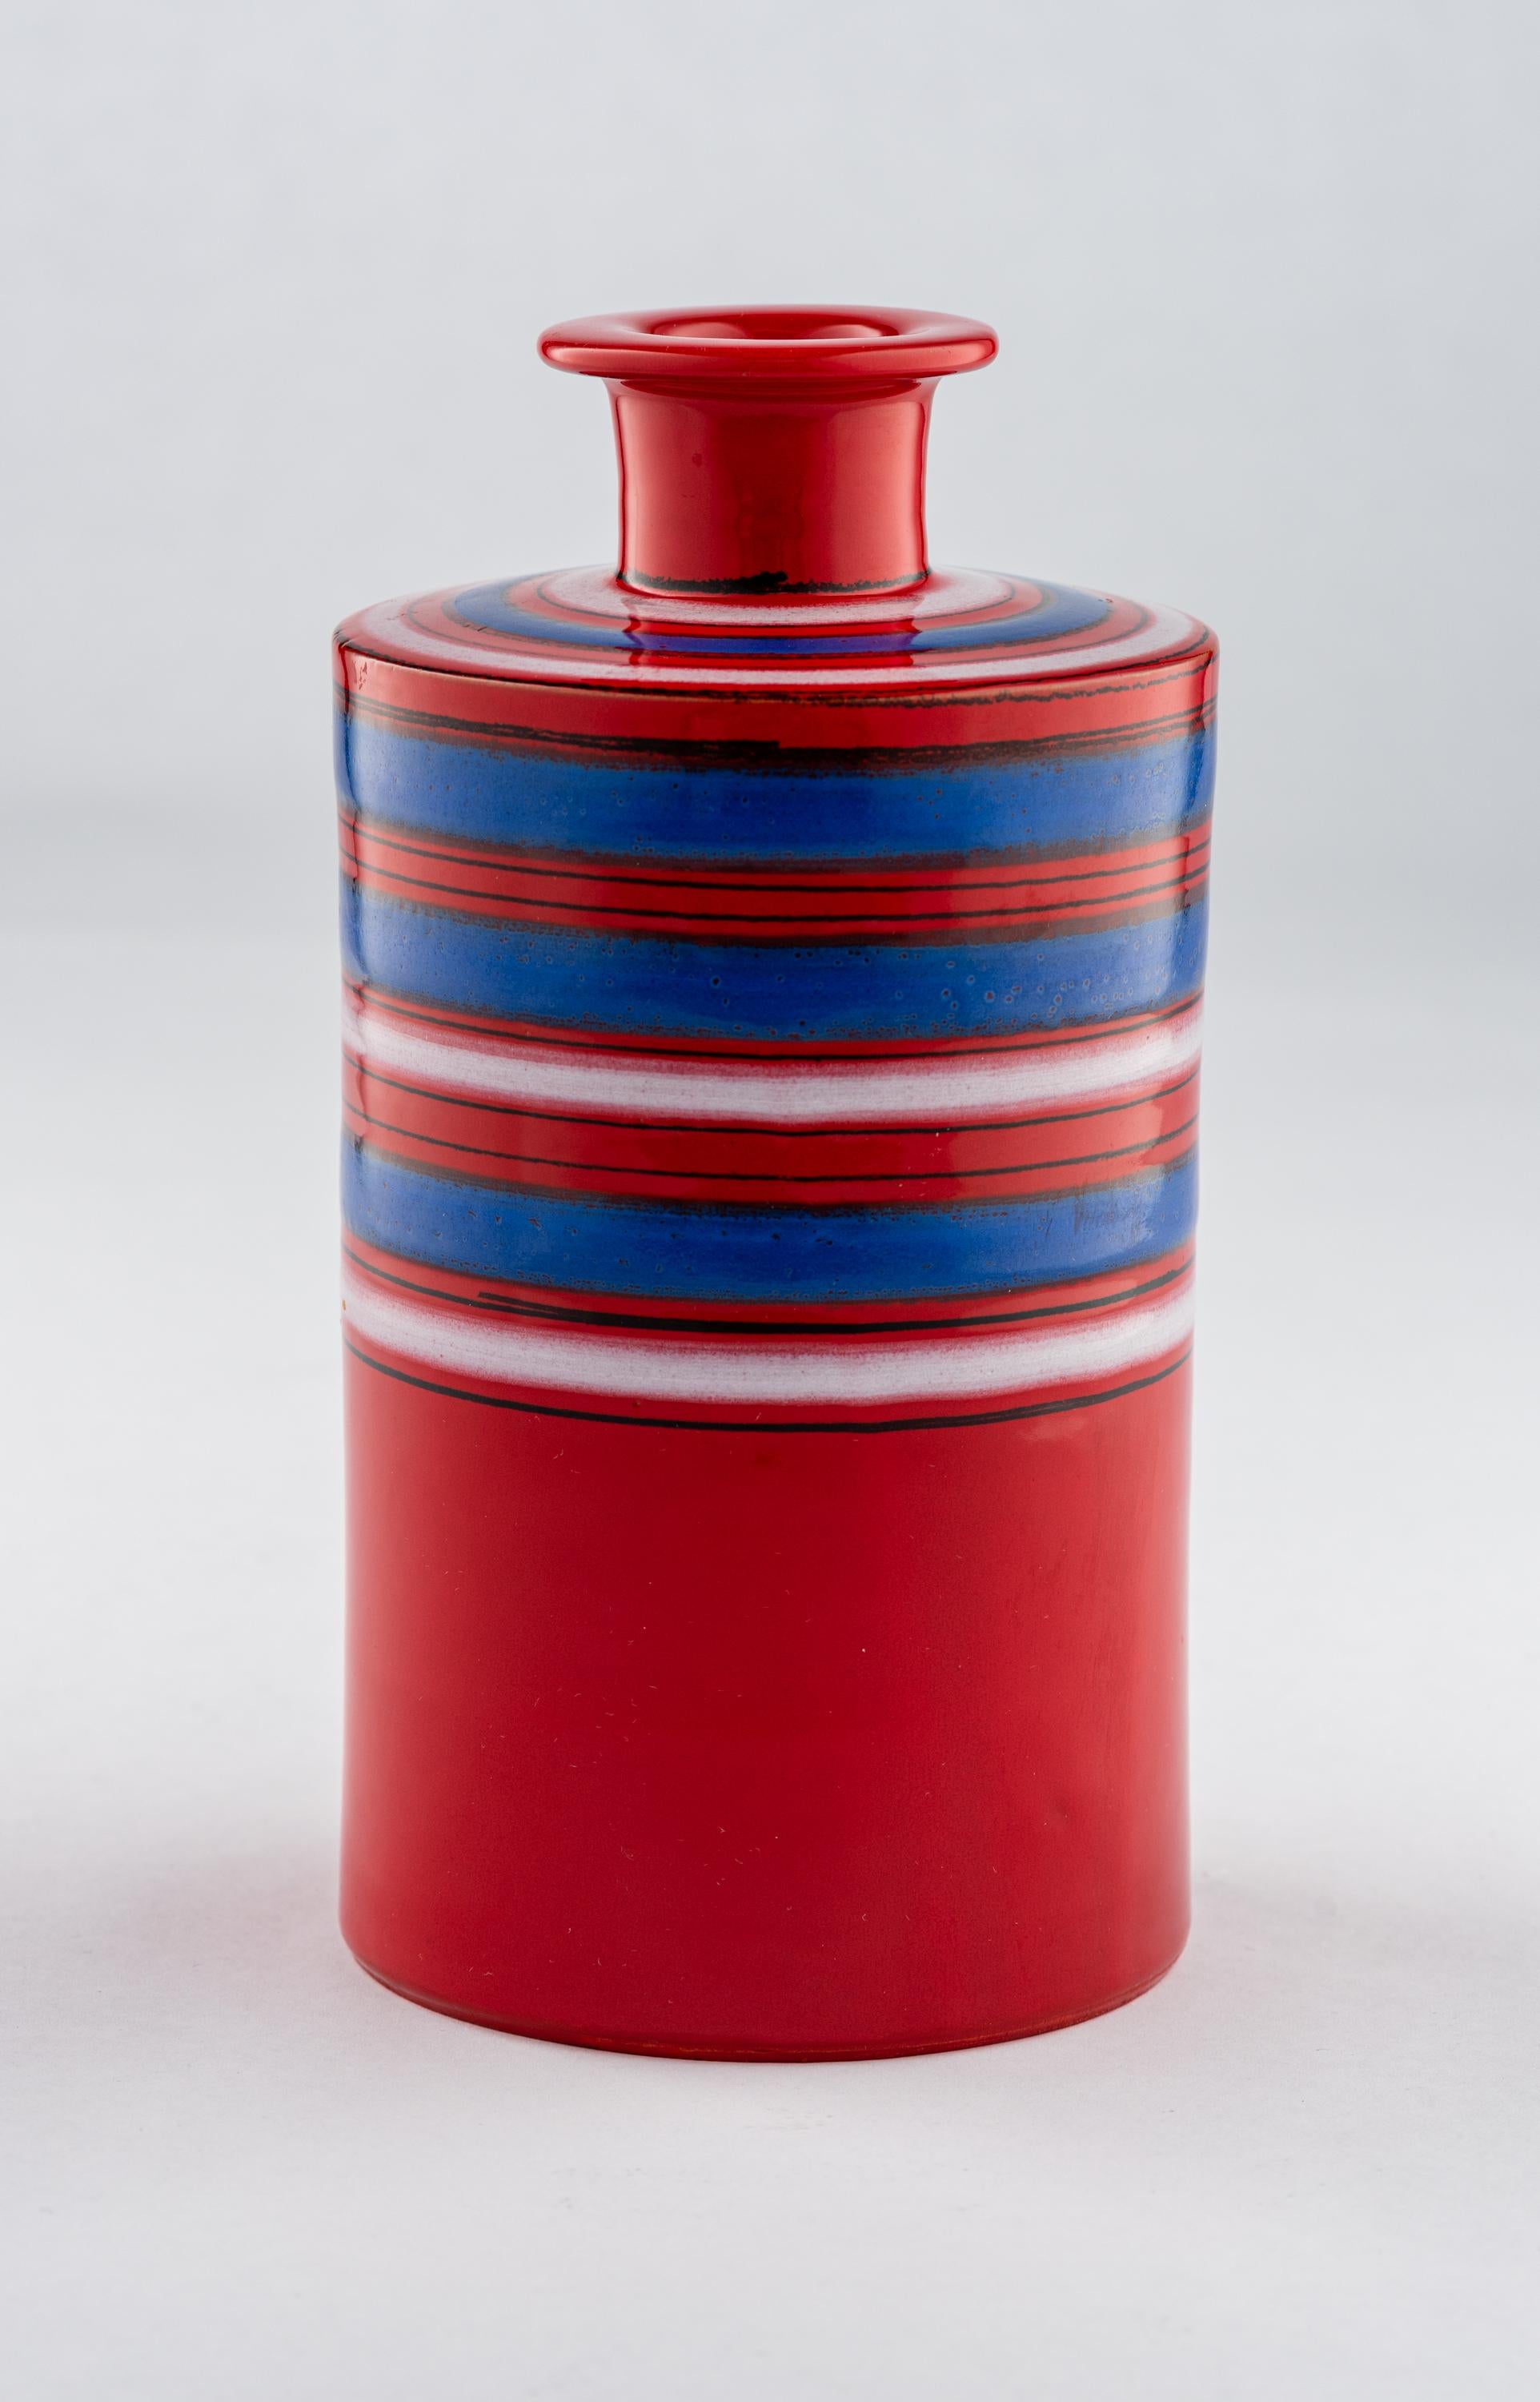 Vase Bitossi Raymor, céramique, rayures, rouge, bleu, blanc, signé. Vase cylindrique de petite taille, de forme moderniste, décoré de rayures rouges, bleues et blanches. Signé avec l'étiquette Raymor qui se lit : 555 BIT. Conserve l'étiquette